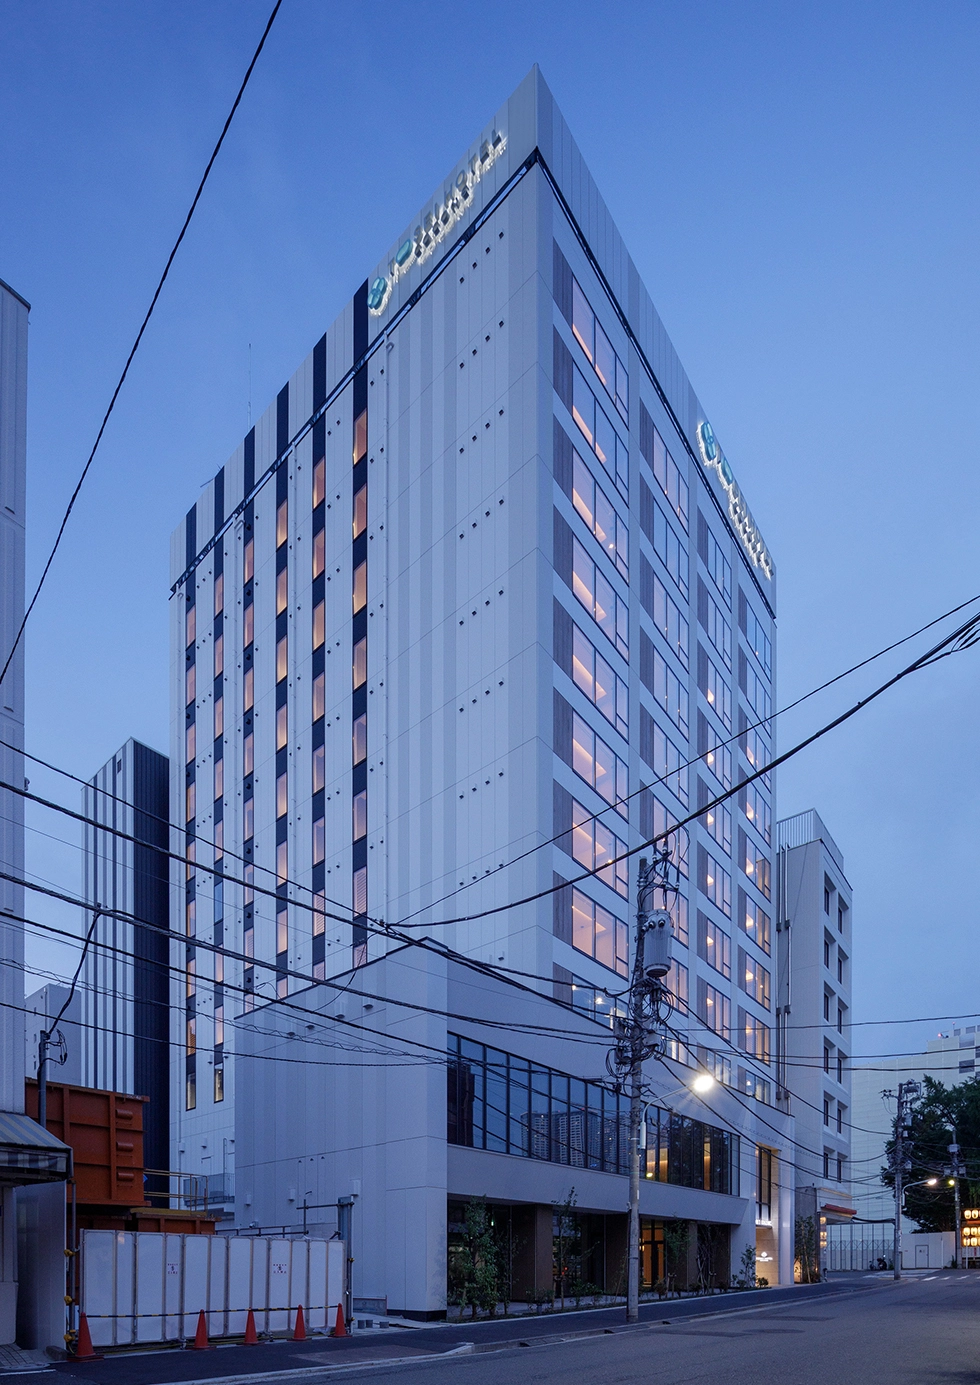 トーセイホテルココネ築地銀座プレミア新築工事のサムネイル画像です